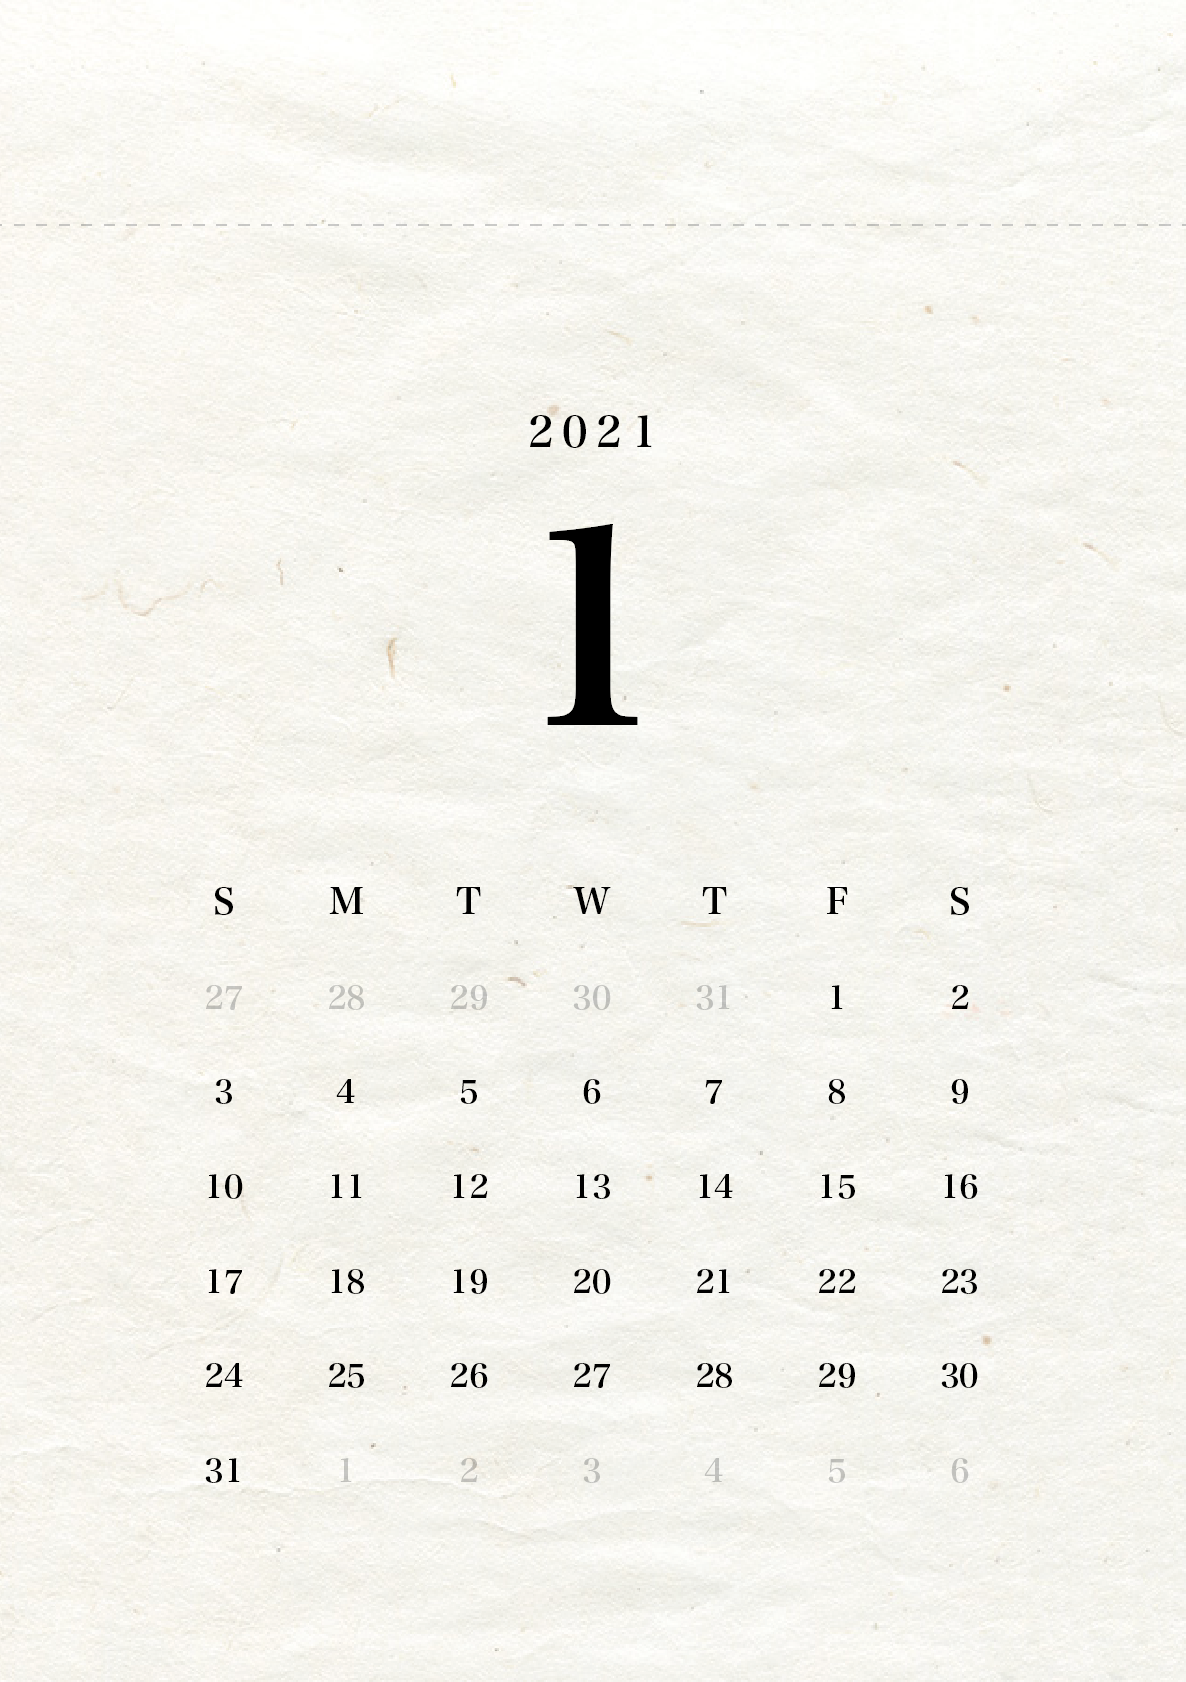 シンプルなカレンダー(『ヒラギノ明朝』フォント版)